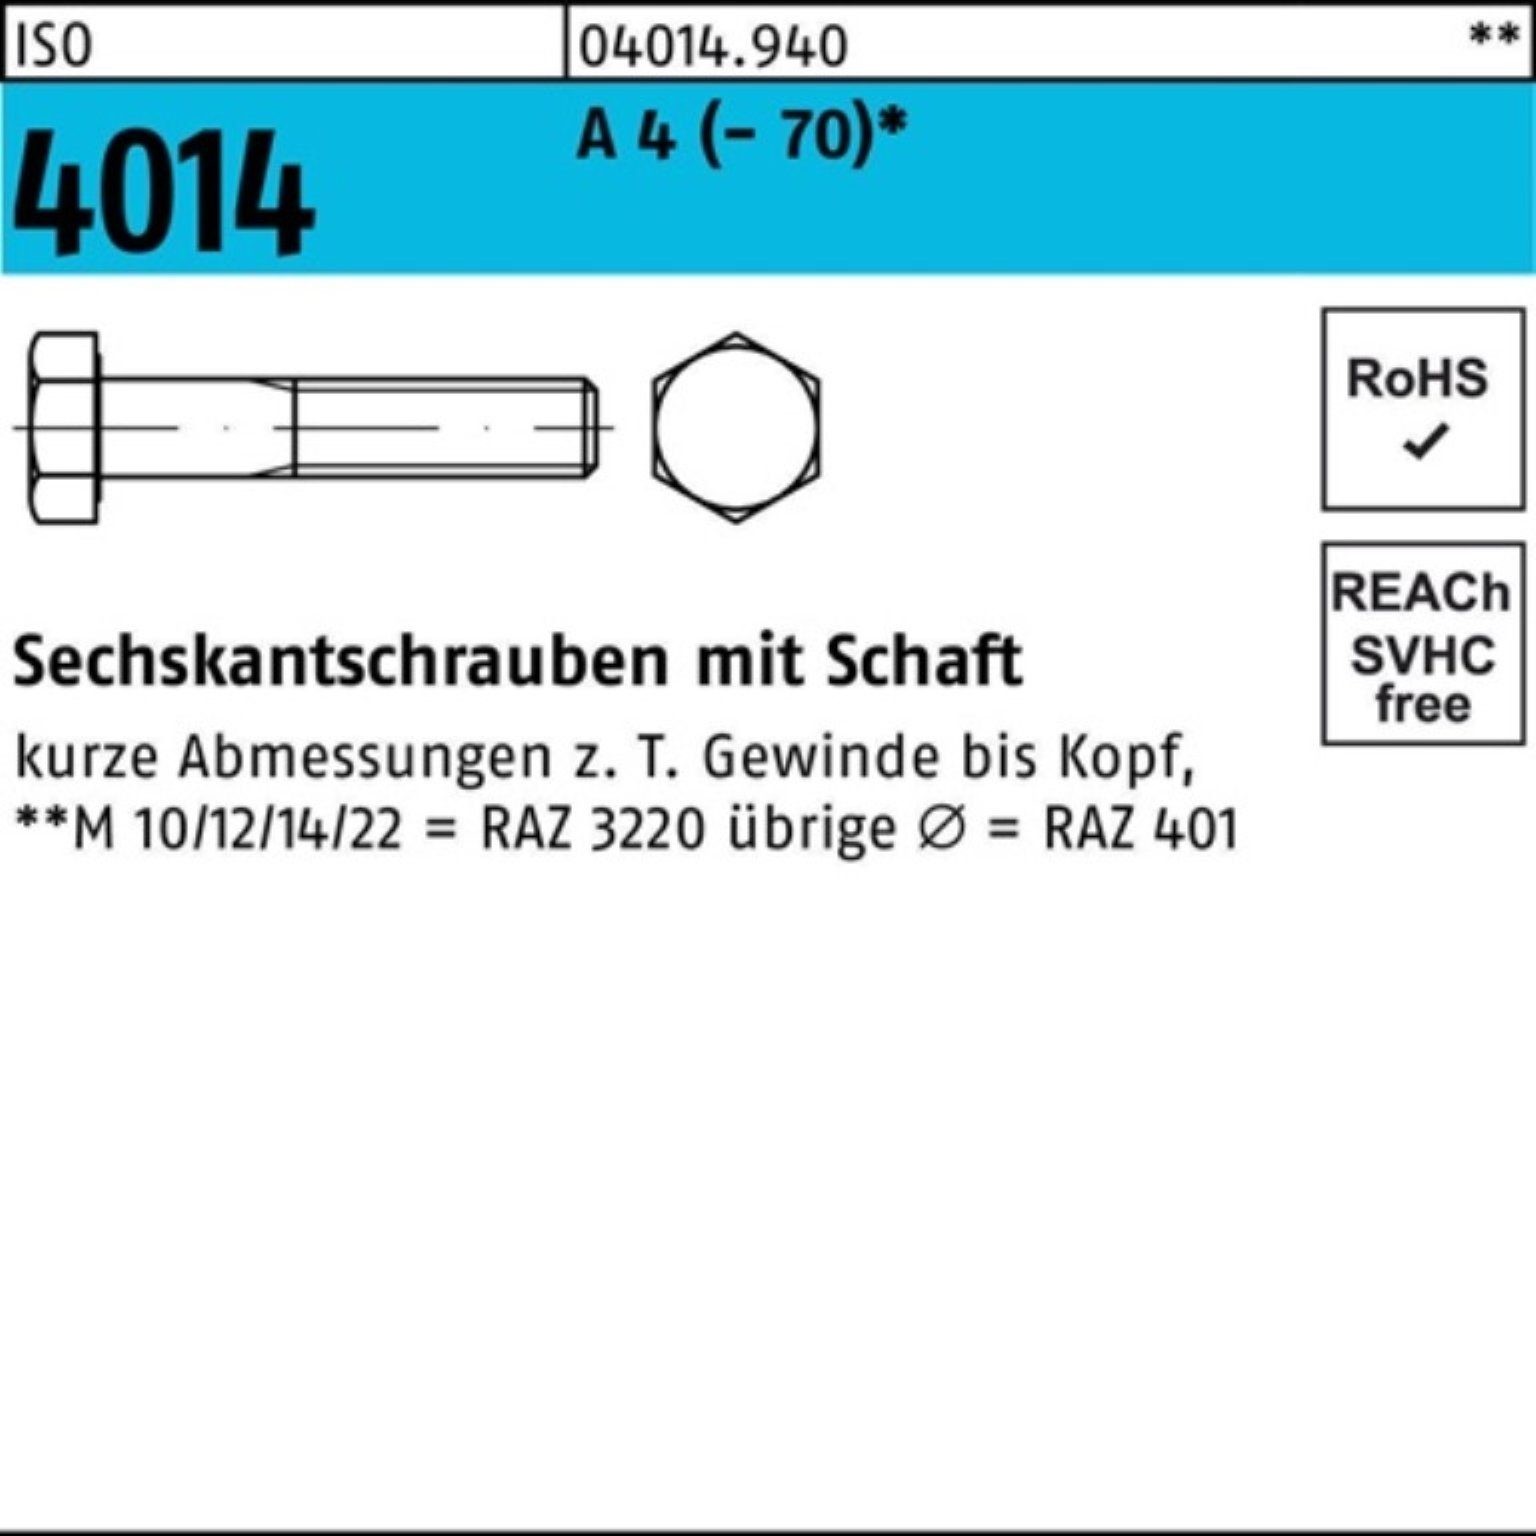 35 ISO Pack Sechskantschraube (70) A 100er Bufab 4 100 Schaft St Sechskantschraube 4014 M8x